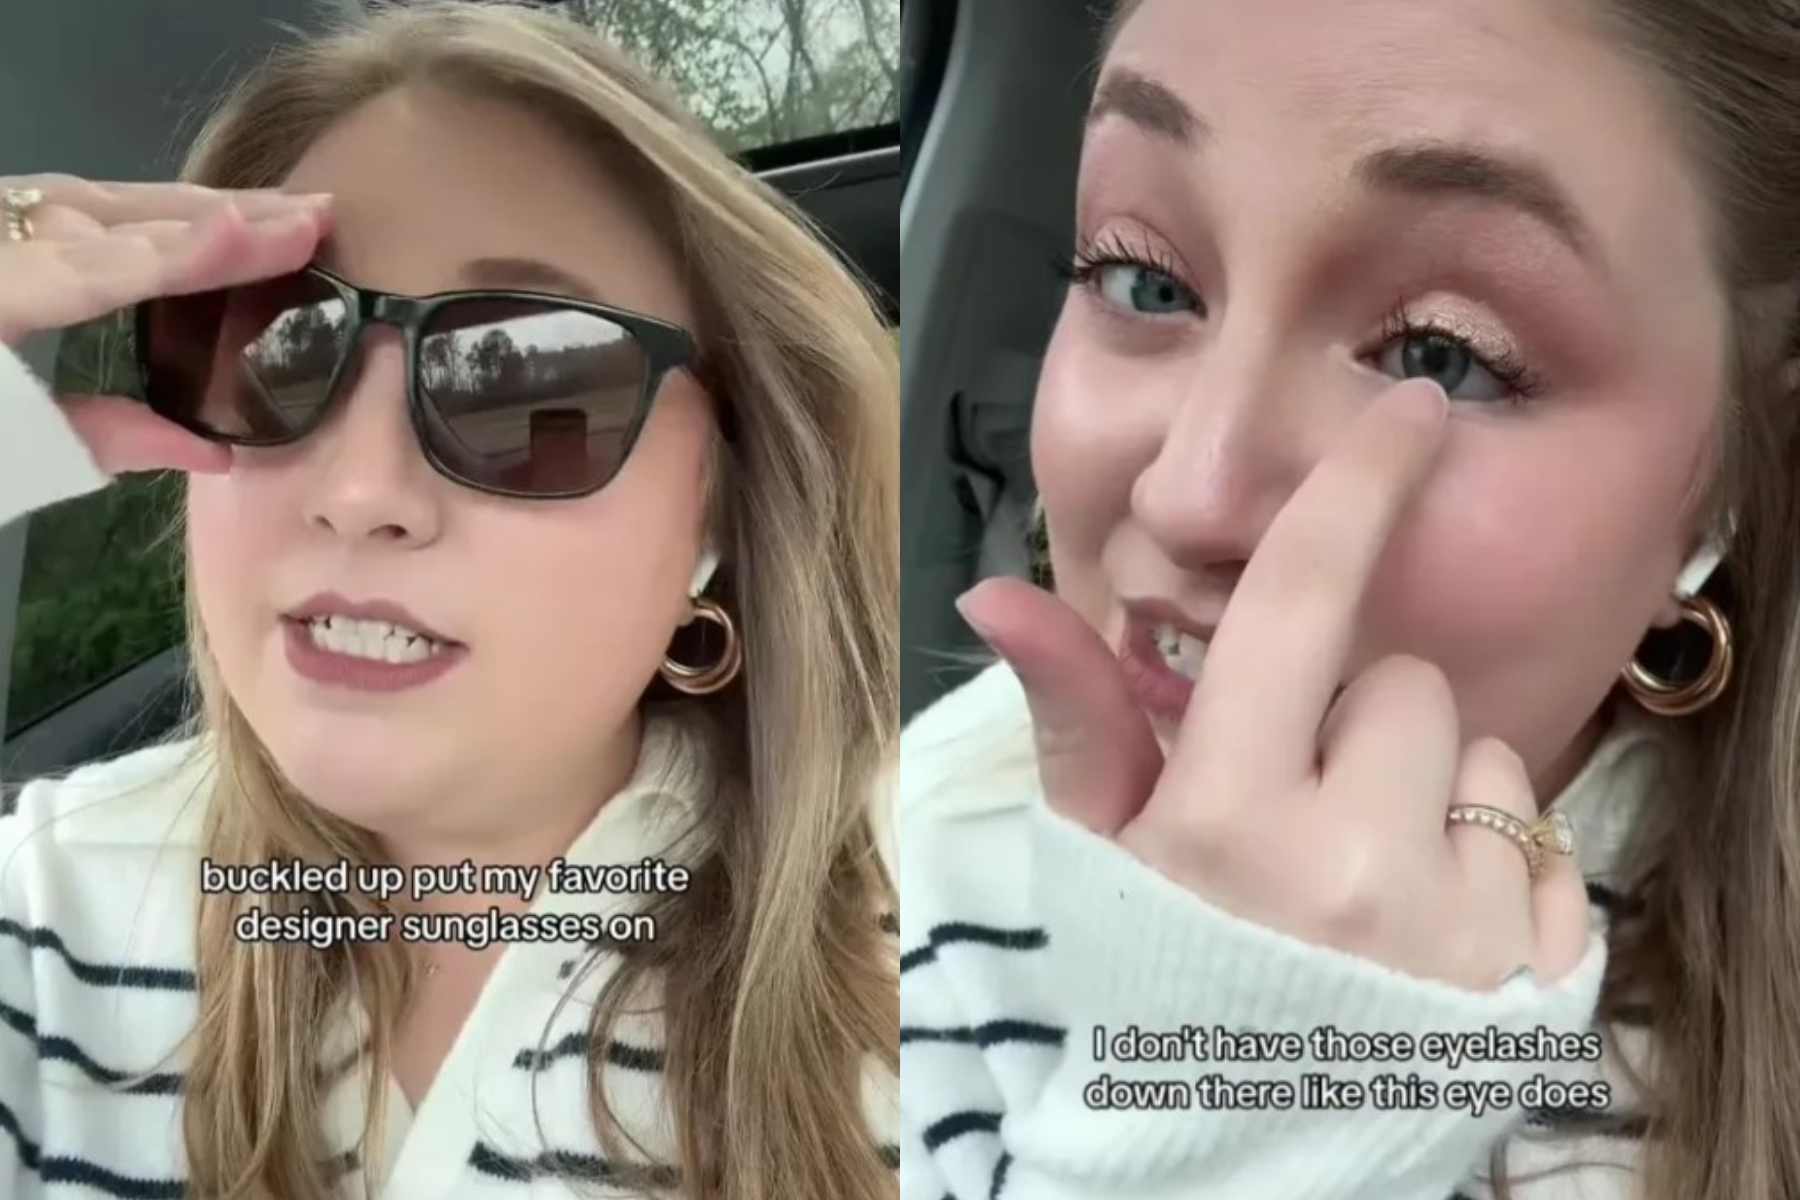 Έχασε την όρασή της ενώ οδηγούσε με γυαλιά ηλίου - Τι ακριβώς συνέβη;